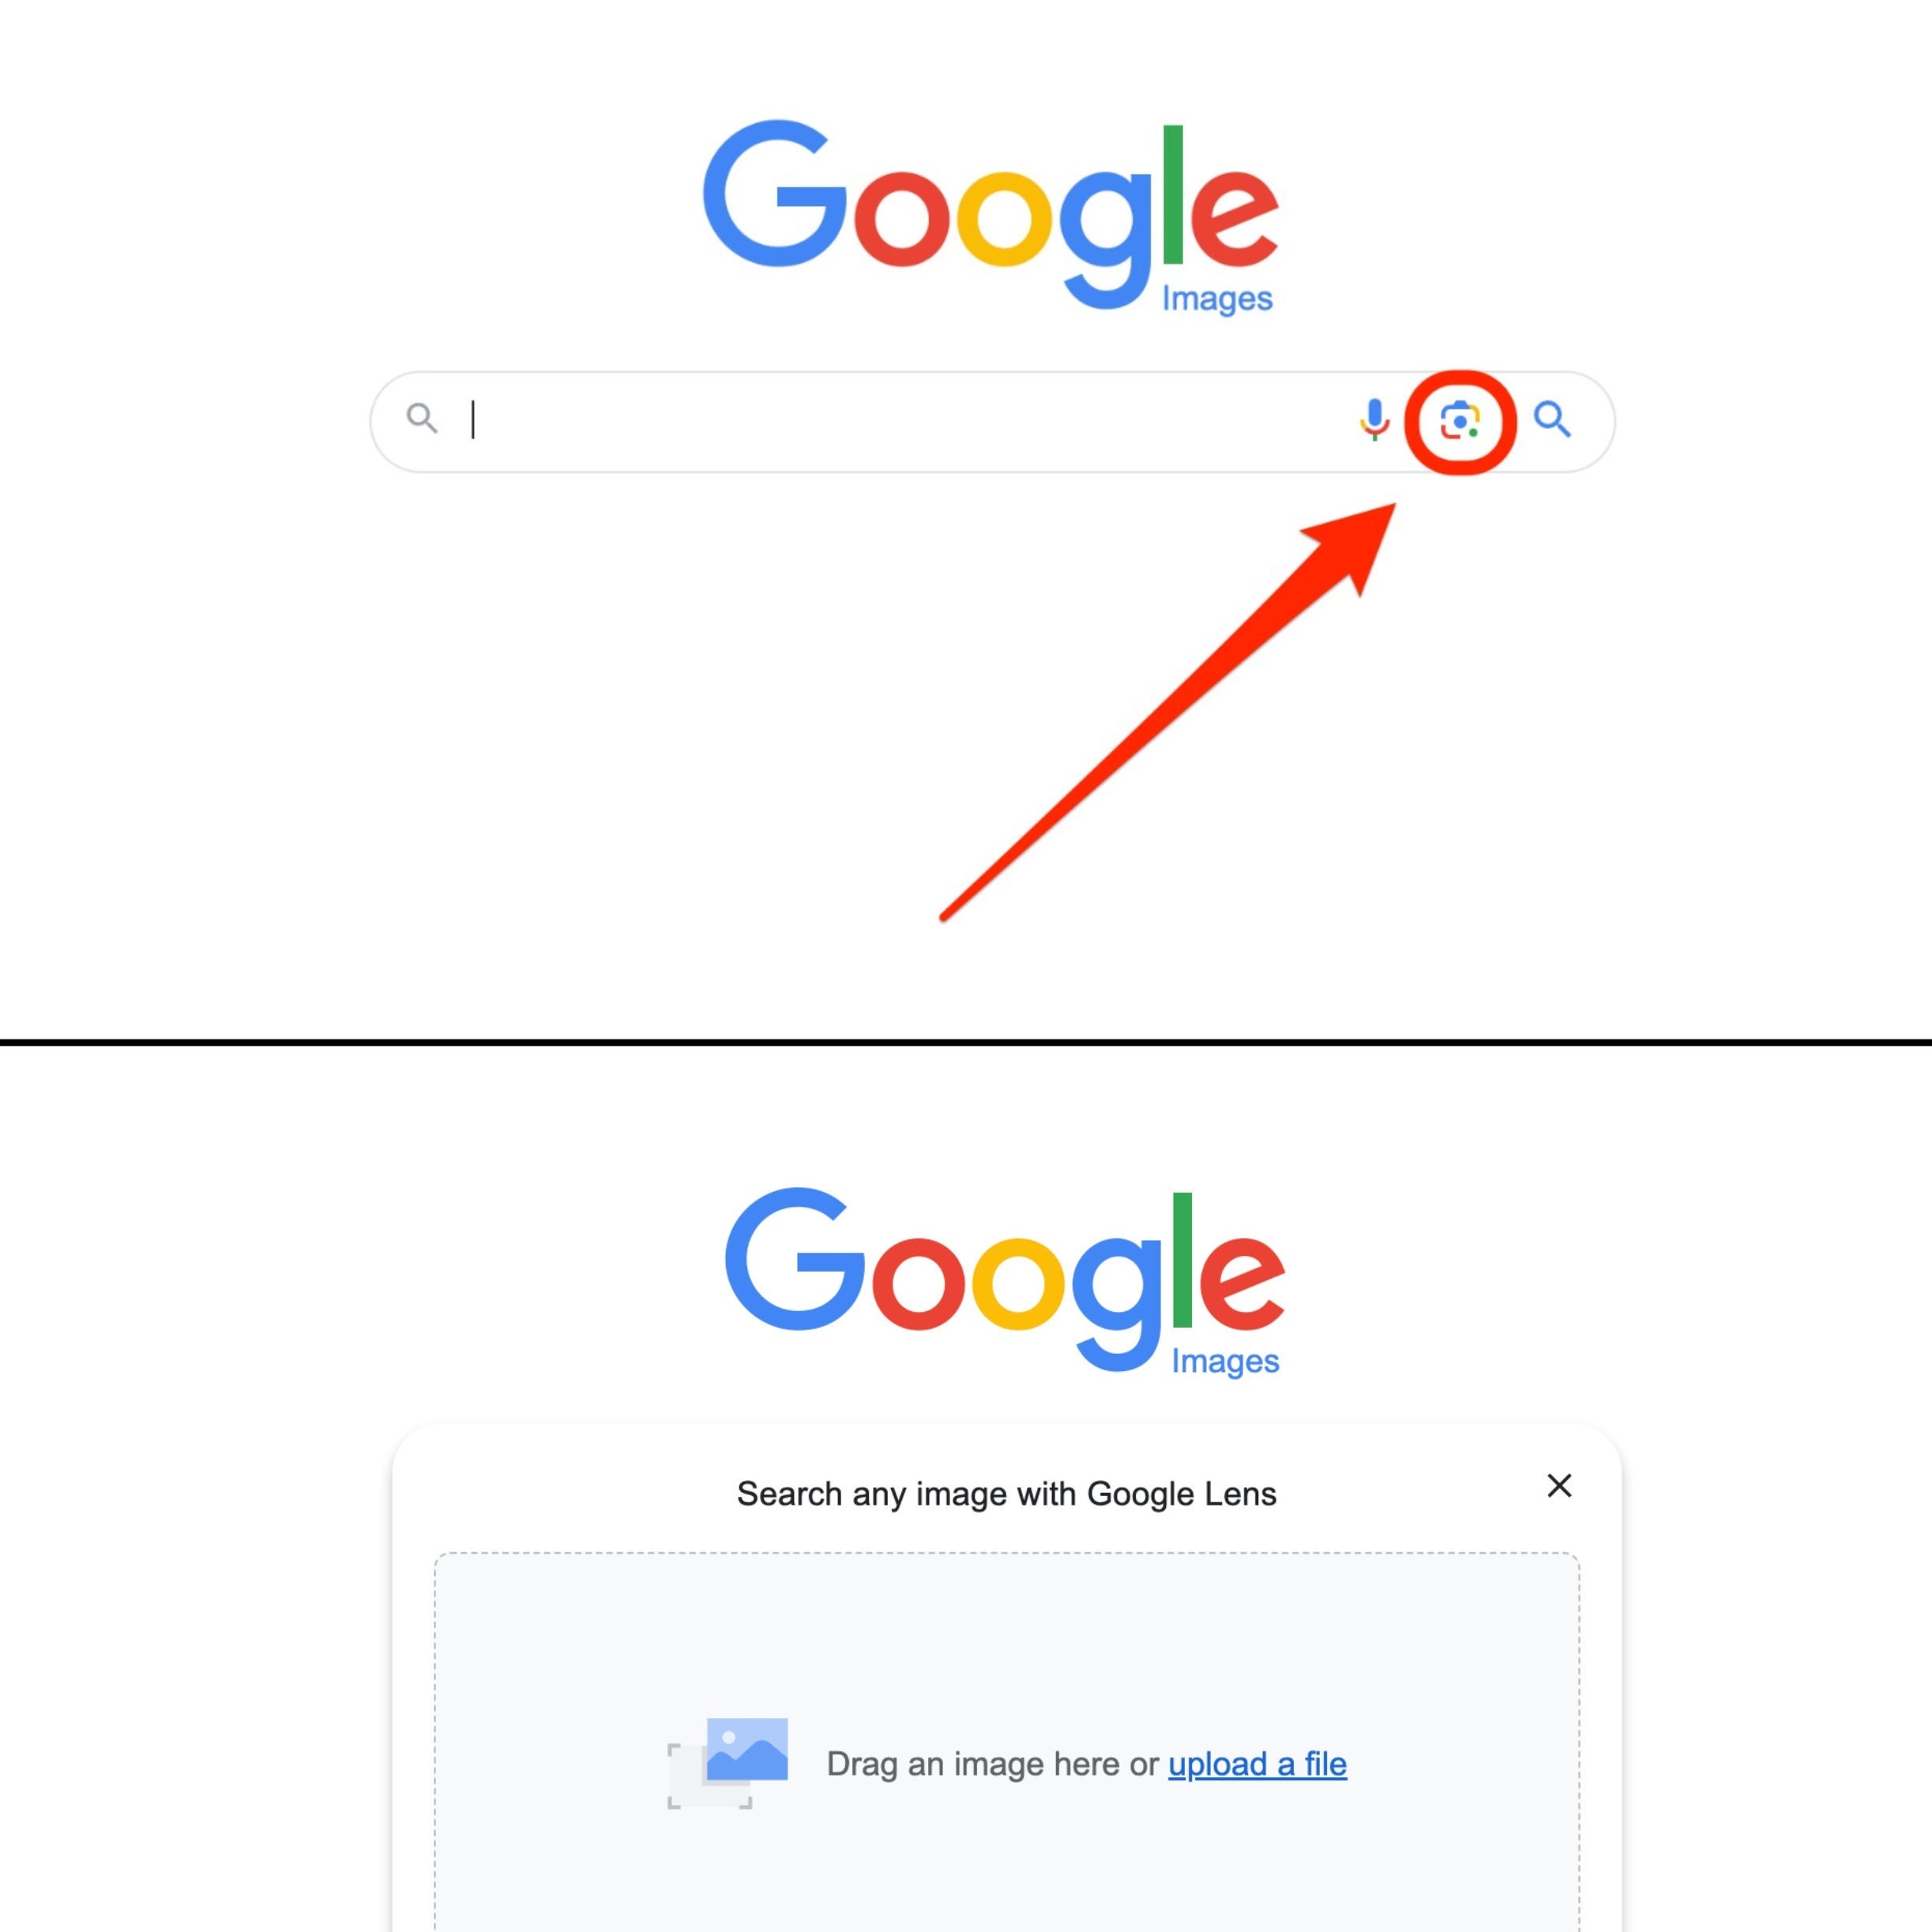 Ein oberes Bild zeigt einen Screenshot von Google Bilder mit dem Google Lens-Symbol, das durch ein rotes Kästchen und einen Pfeil hervorgehoben wird, und ein unteres Bild zeigt einen Screenshot des Datei-Uploaders von Google Bilder.